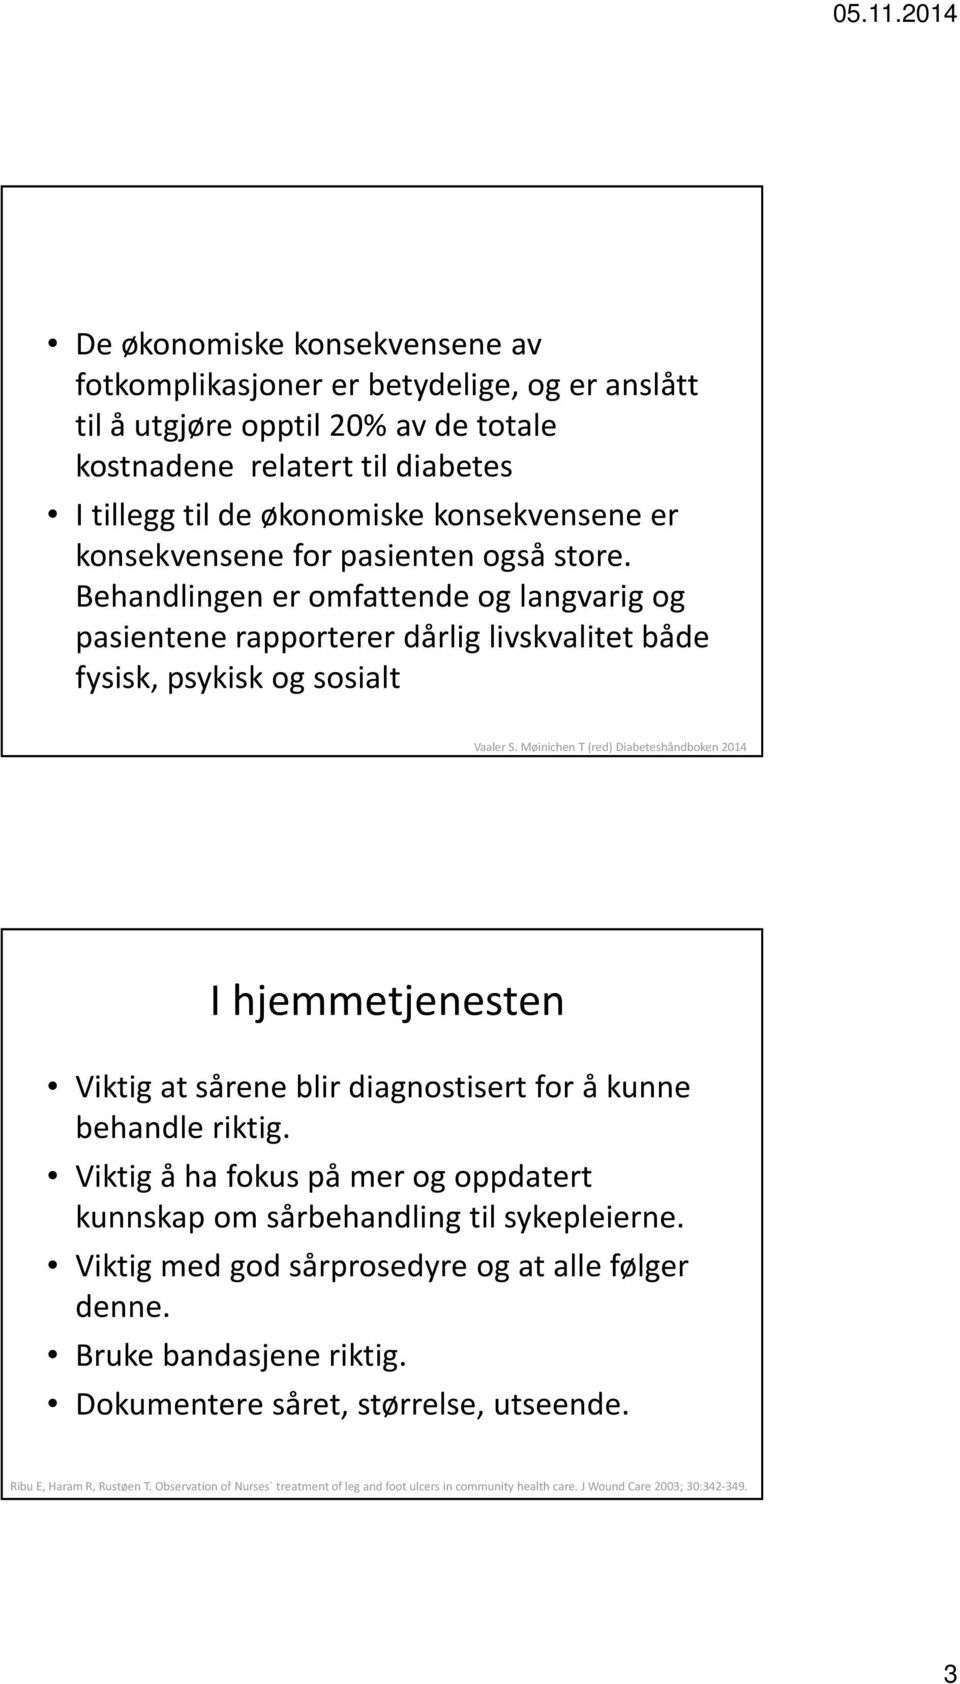 Møinichen T (red) Diabeteshåndboken 2014 I hjemmetjenesten Viktig at sårene blir diagnostisert for å kunne behandle riktig.